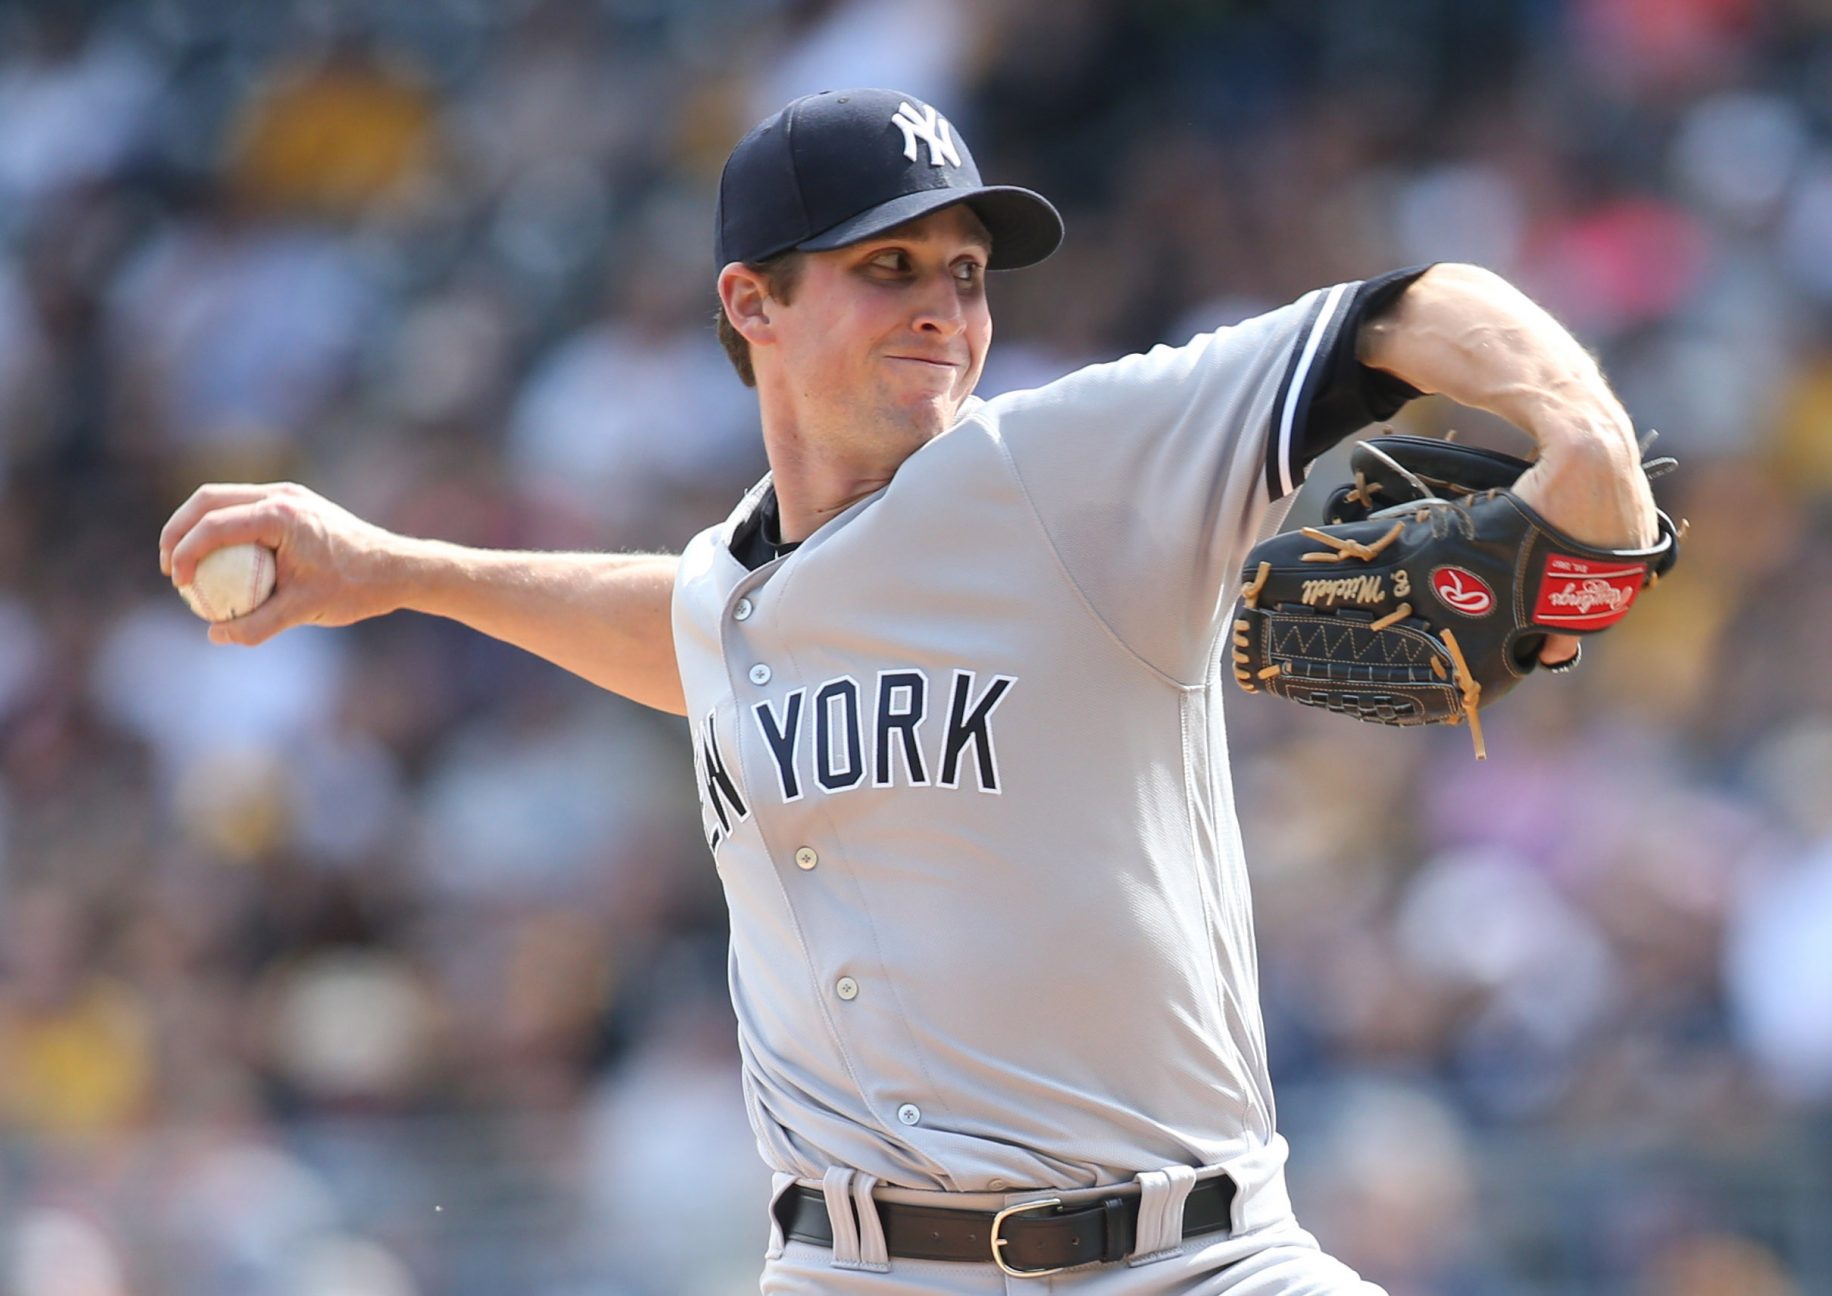 New York Yankees: Bryan Mitchell Is Not Adam Warren 2.0 ... He'll Be Better 2